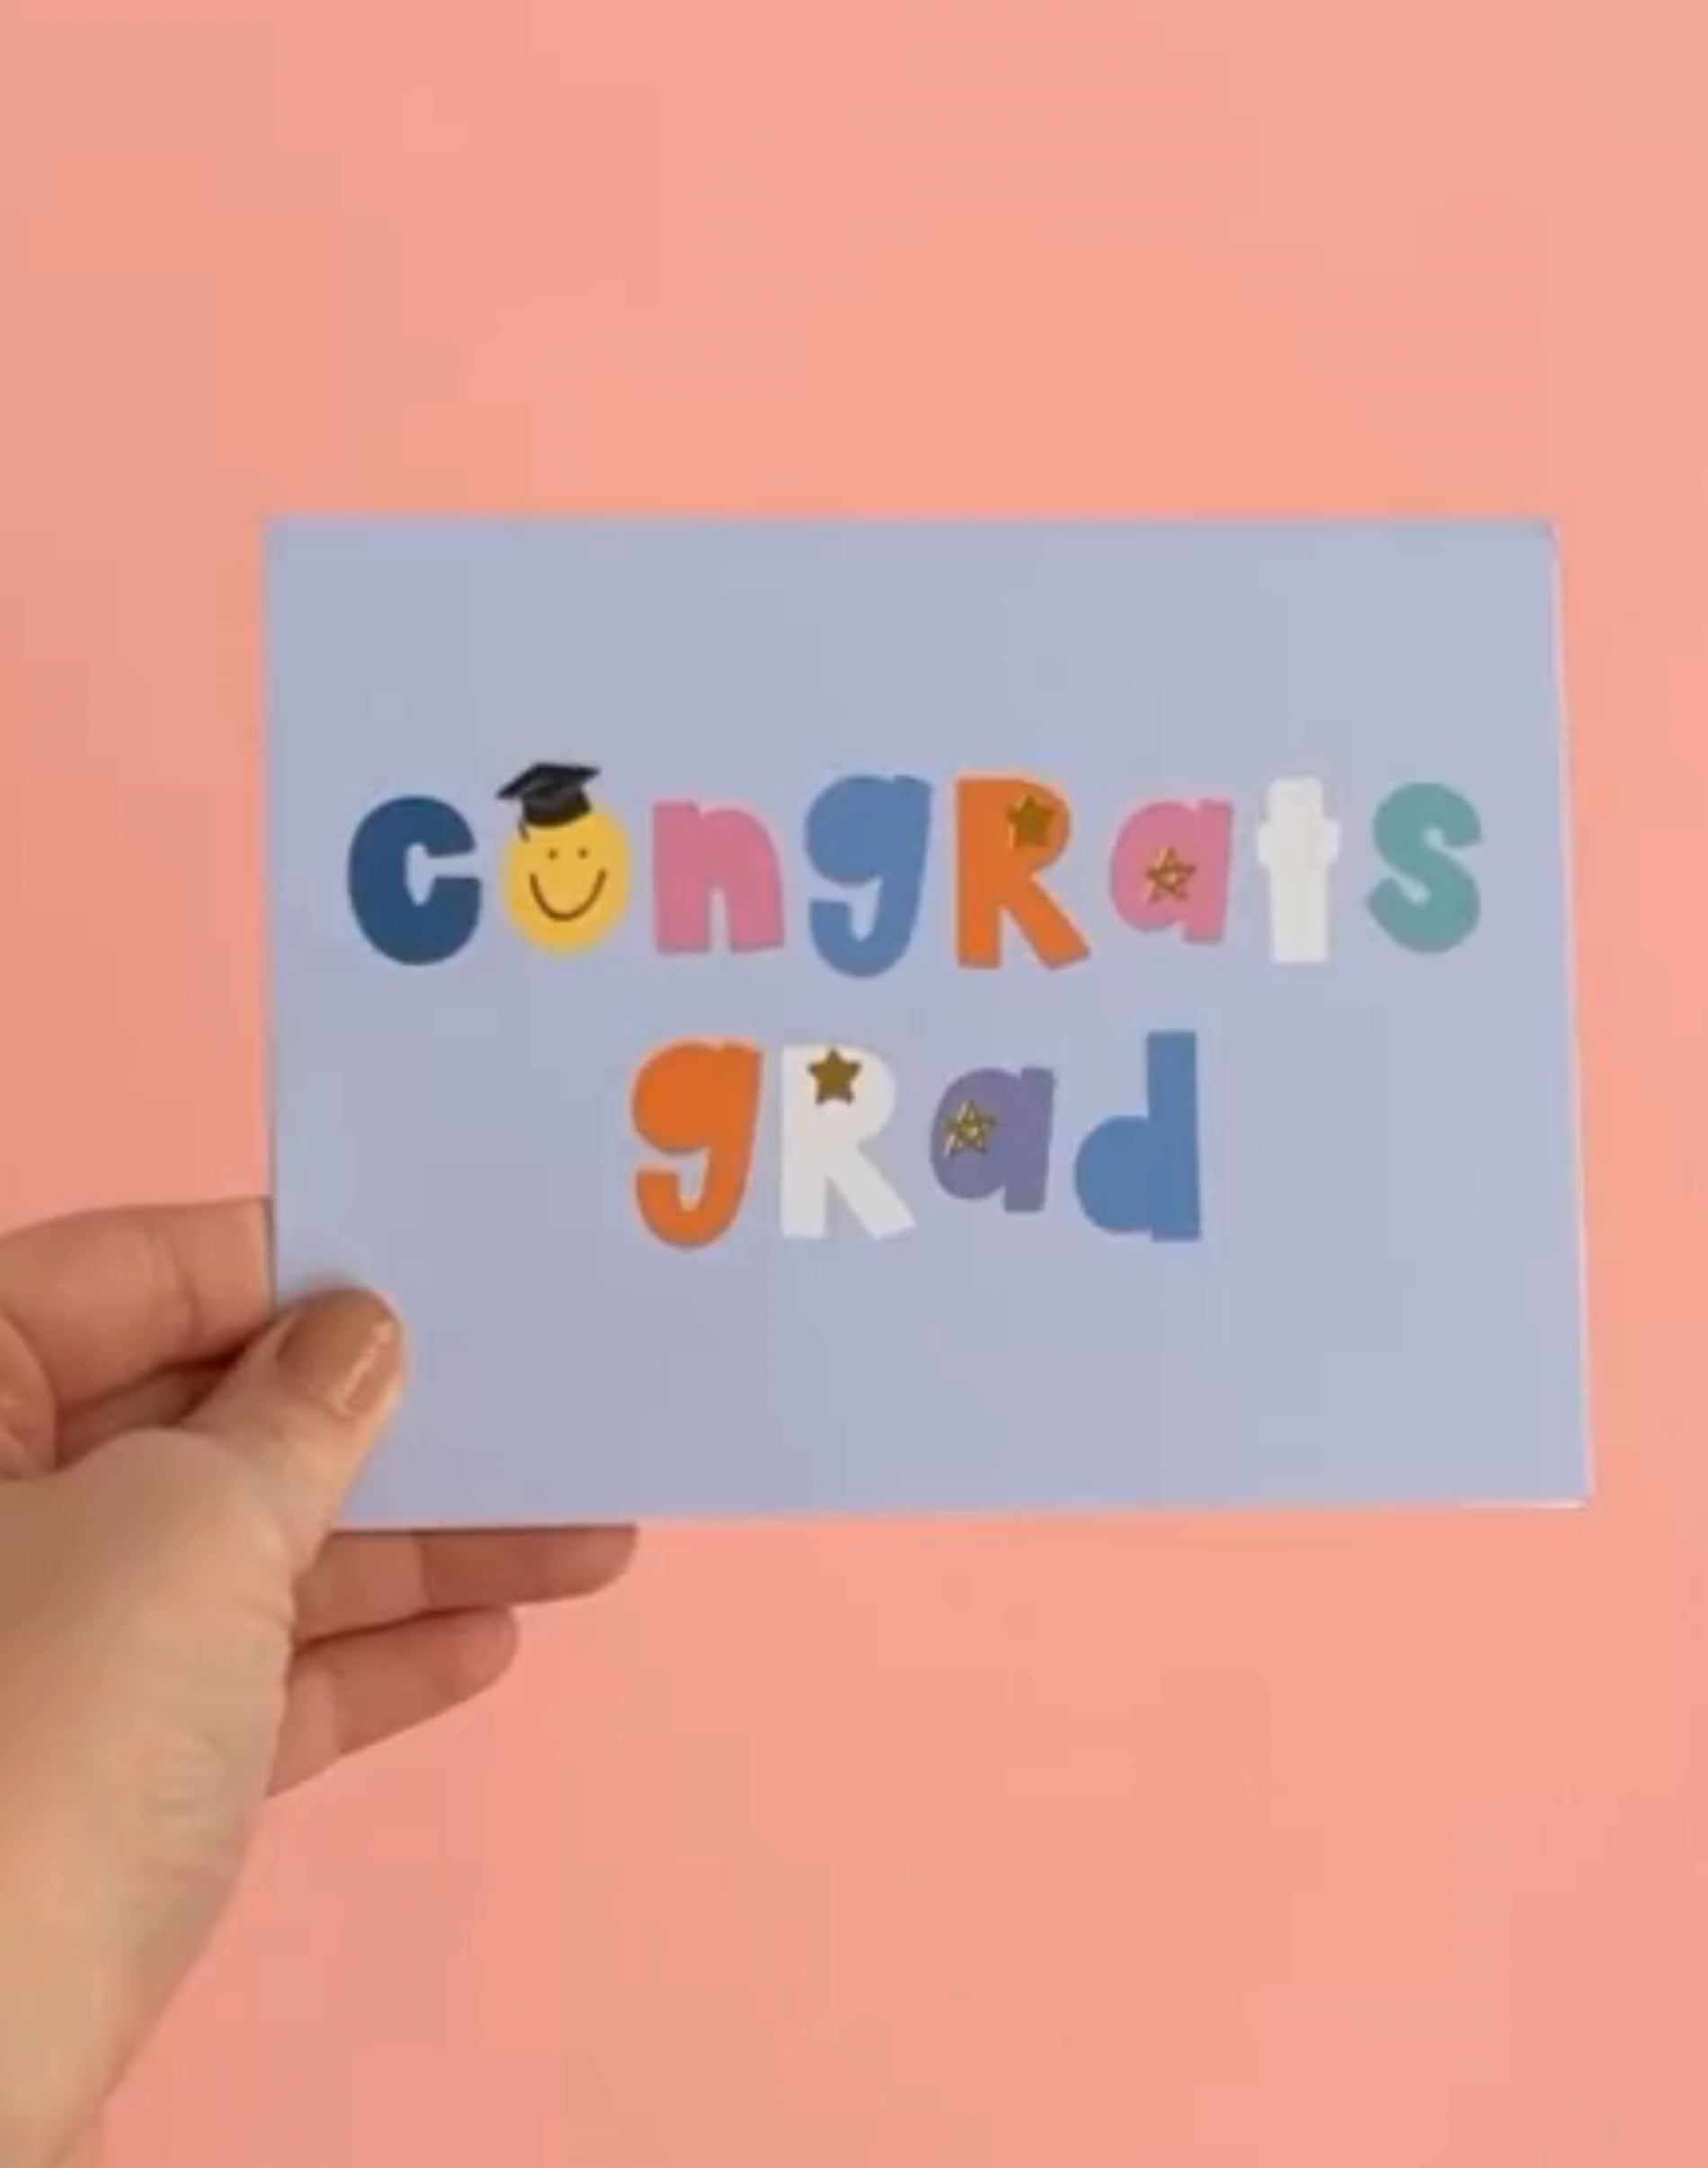 Congrats Grad Greeting Card image